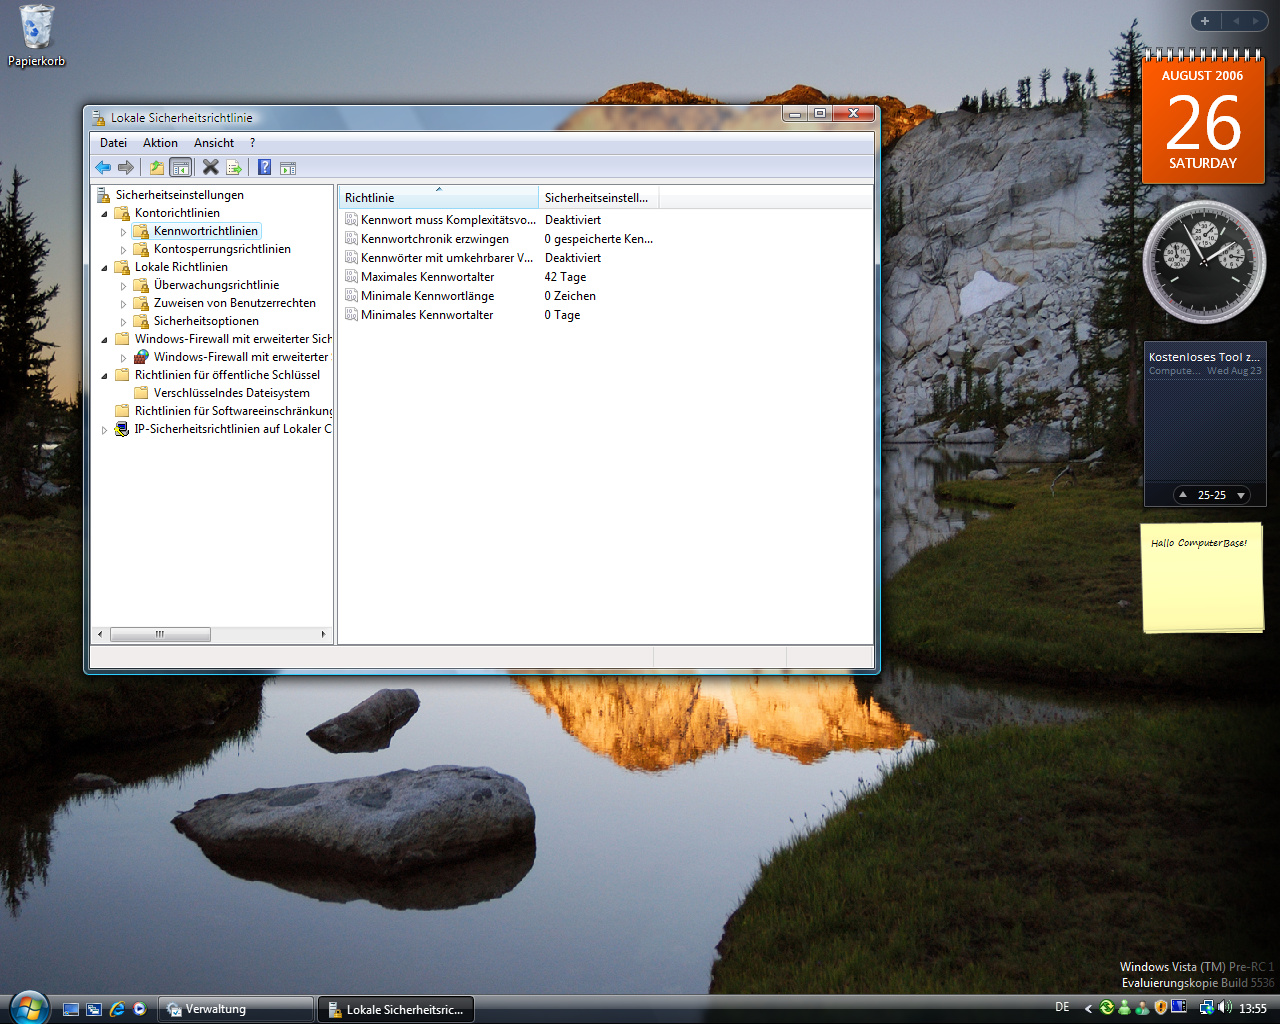 Windows Vista Build 5536 - Sicherheitsrichtlinien